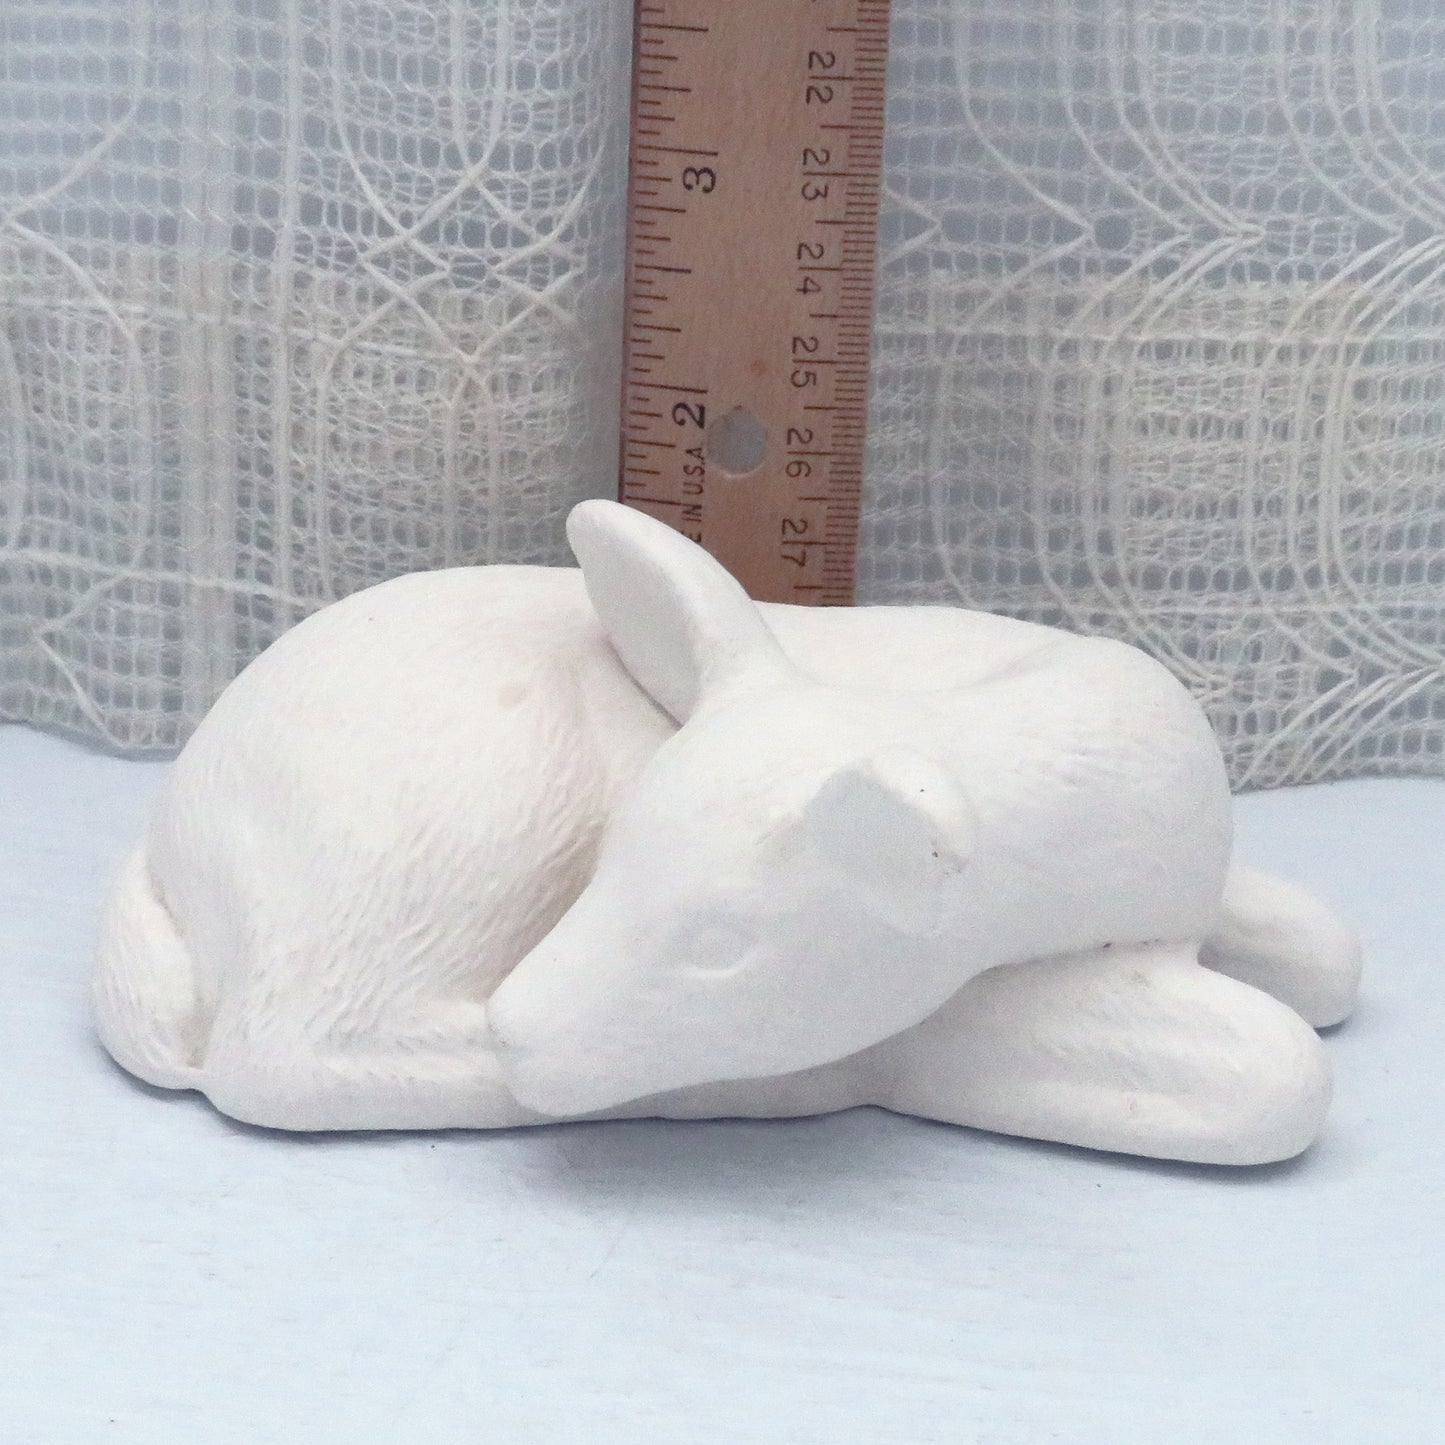 Handmade Ready to Paint Ceramic Reindeer Figurine Lying Down, Unpainted Reindeer Statue